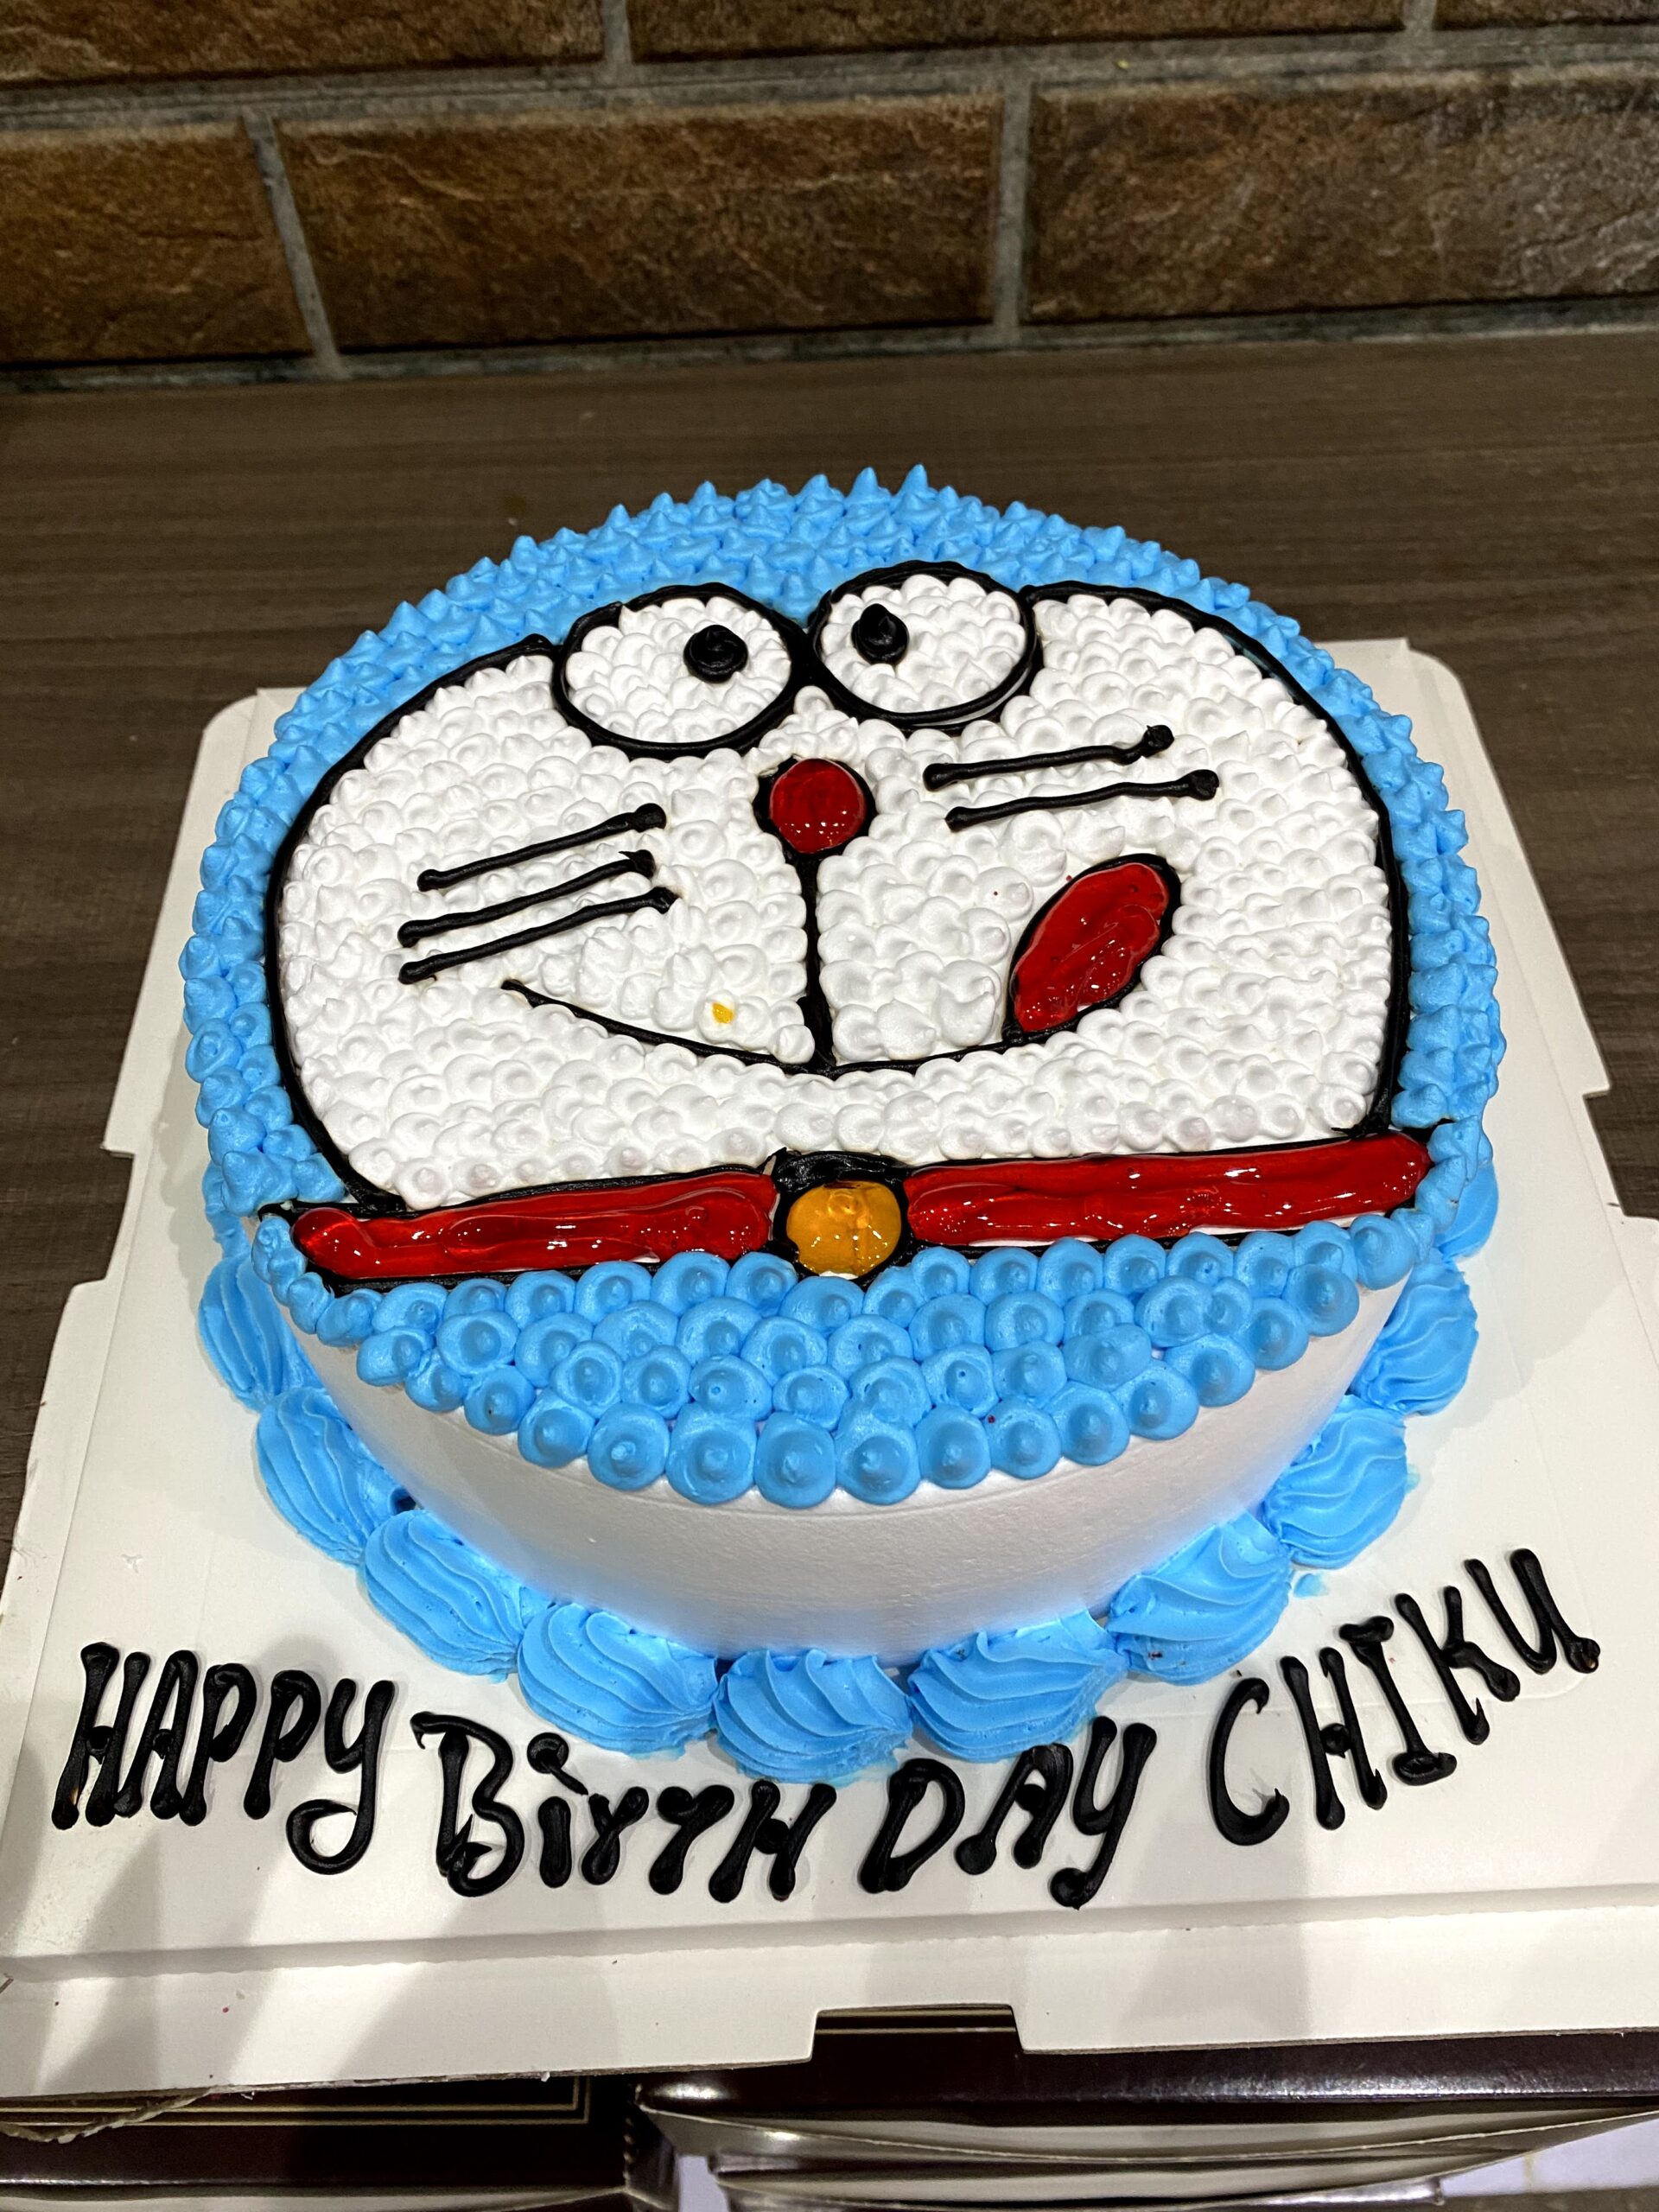 ❤️ Chocolate Shaped Birthday Cake For Chiku